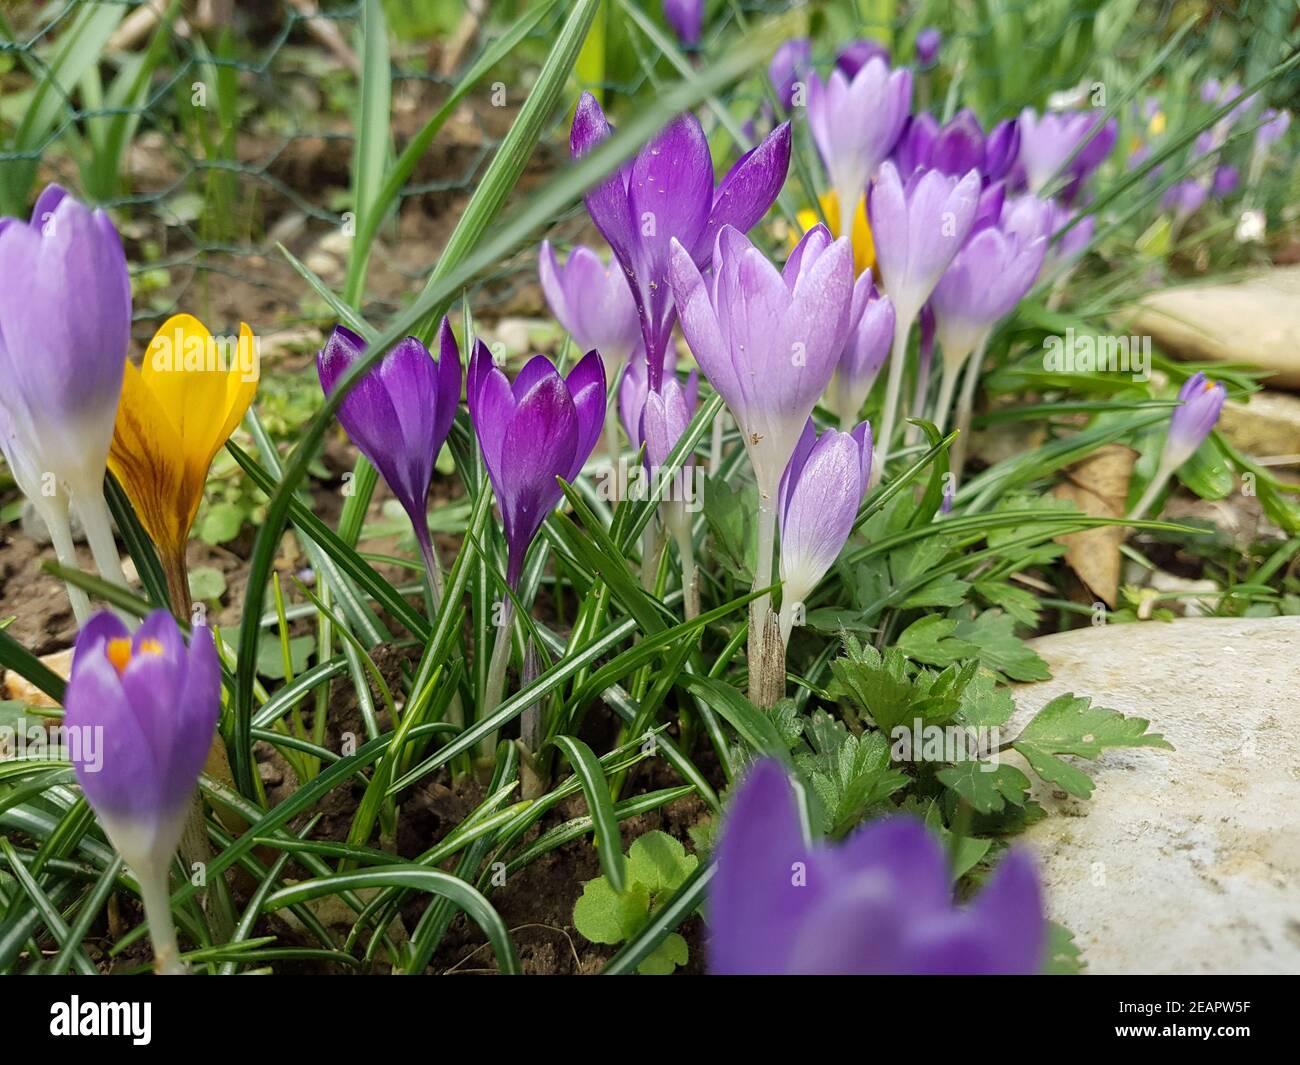 Botanischer, Krokus, Crocus, sativus Stock Photo